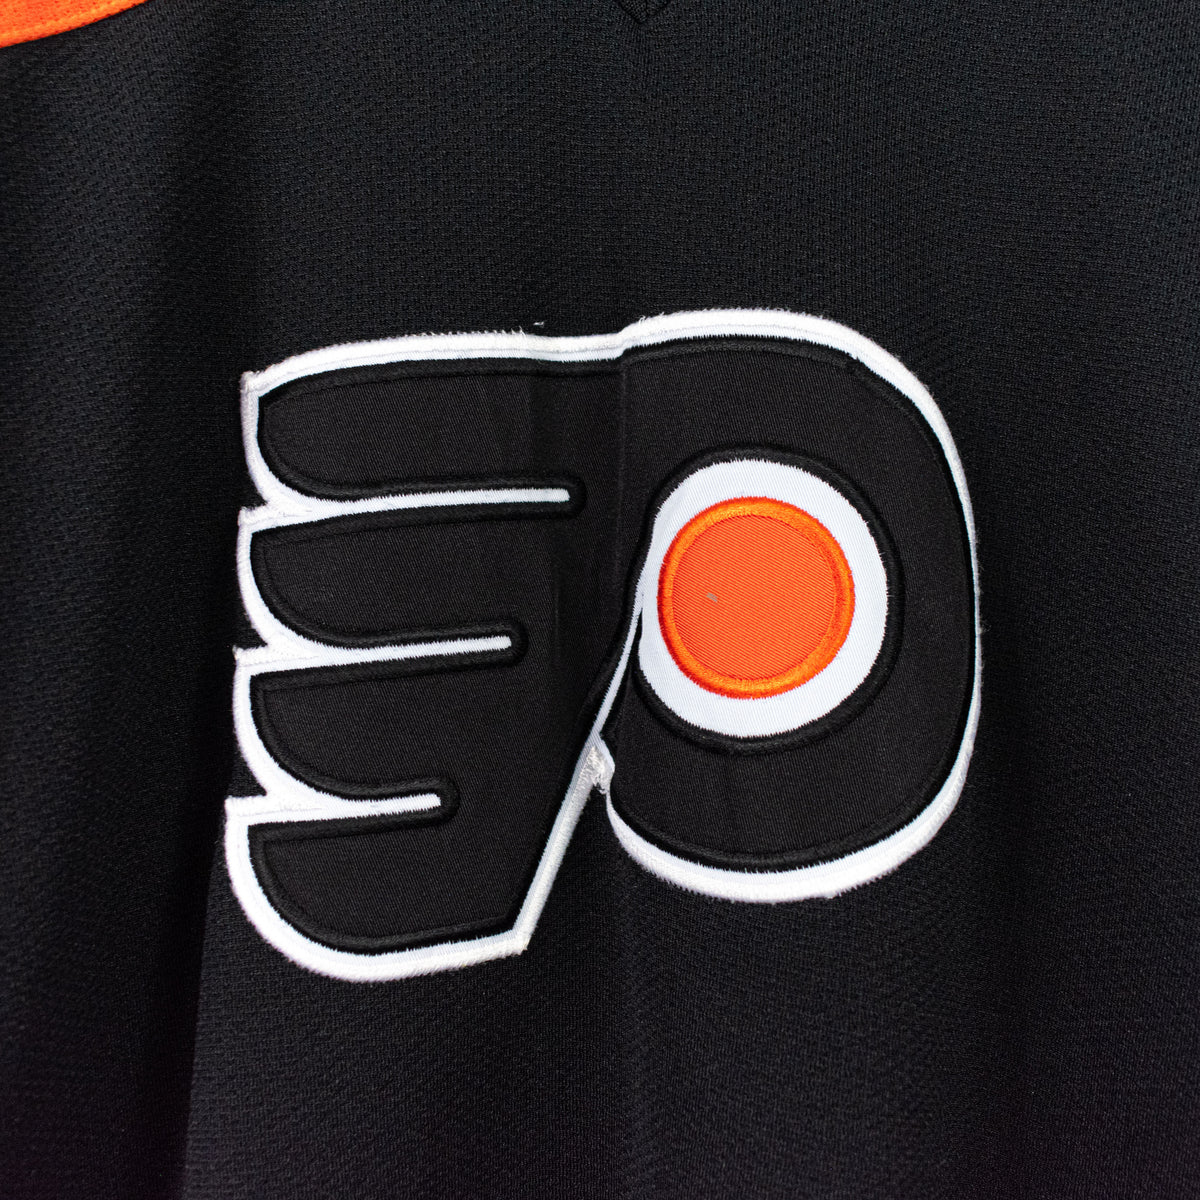 Starter NHL Philadelphia Flyers Jersey– VNTG Shop